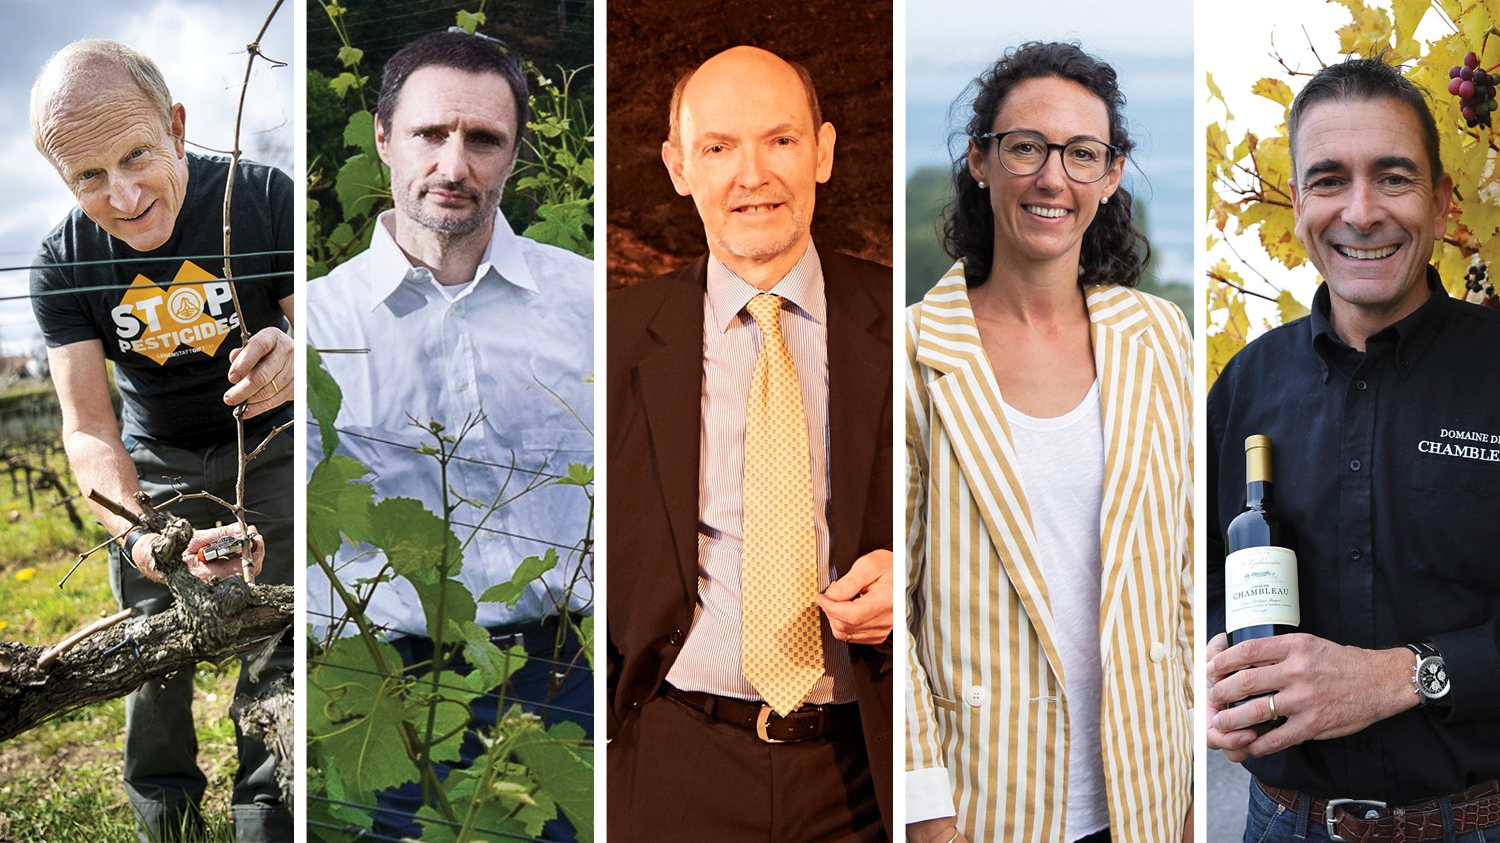 Les cinq vignerons neuchâtelois honorés par la SVS: Jean-Denis Perrochet, Jacques Tatasciore, Jean-Marie Mauler, Annie Rossi et Louis-Philippe Burgat (de gauche à droite).